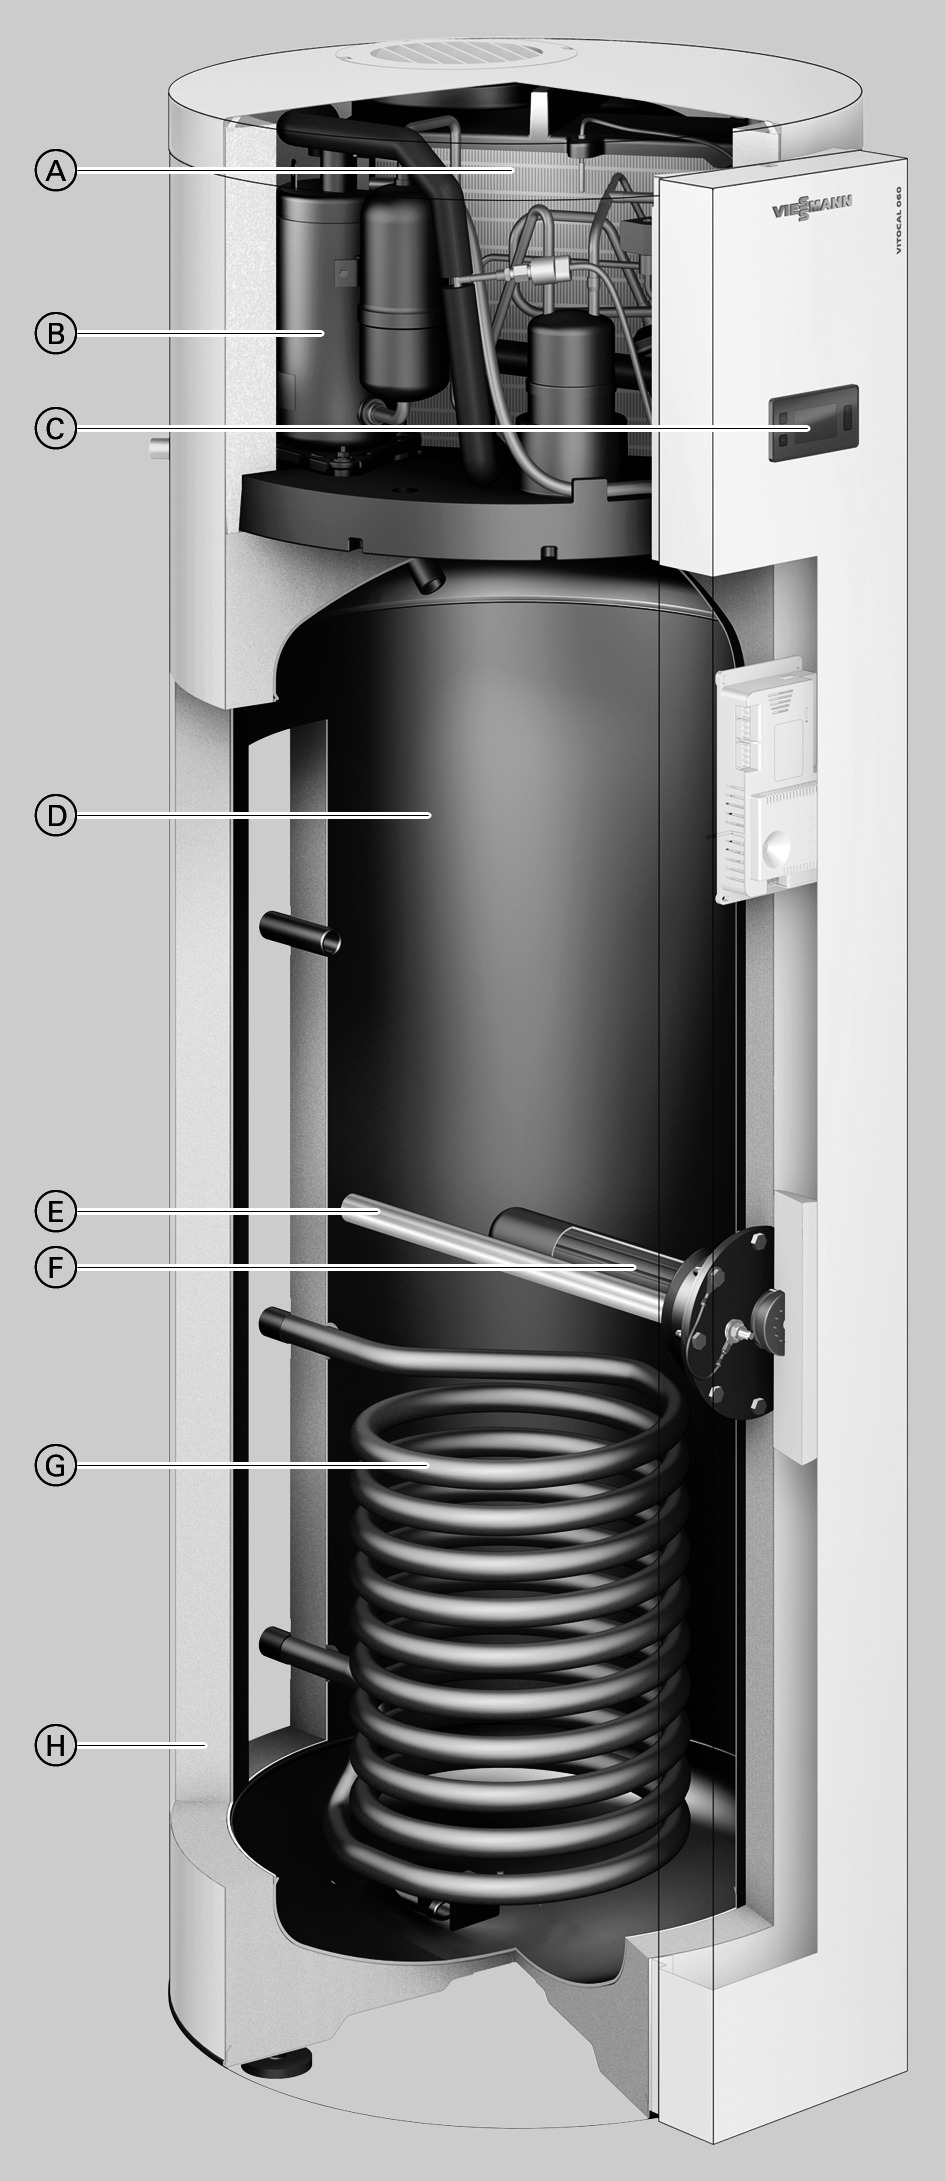 Vitocal 060-A (continua) Vantaggi A Evaporatore B Compressore C Regolazione della pompa di calore D Bollitore con capacità di 25 litri (tipo WWKS) o 254 litri (tipo WWK) E Anodo di magnesio F